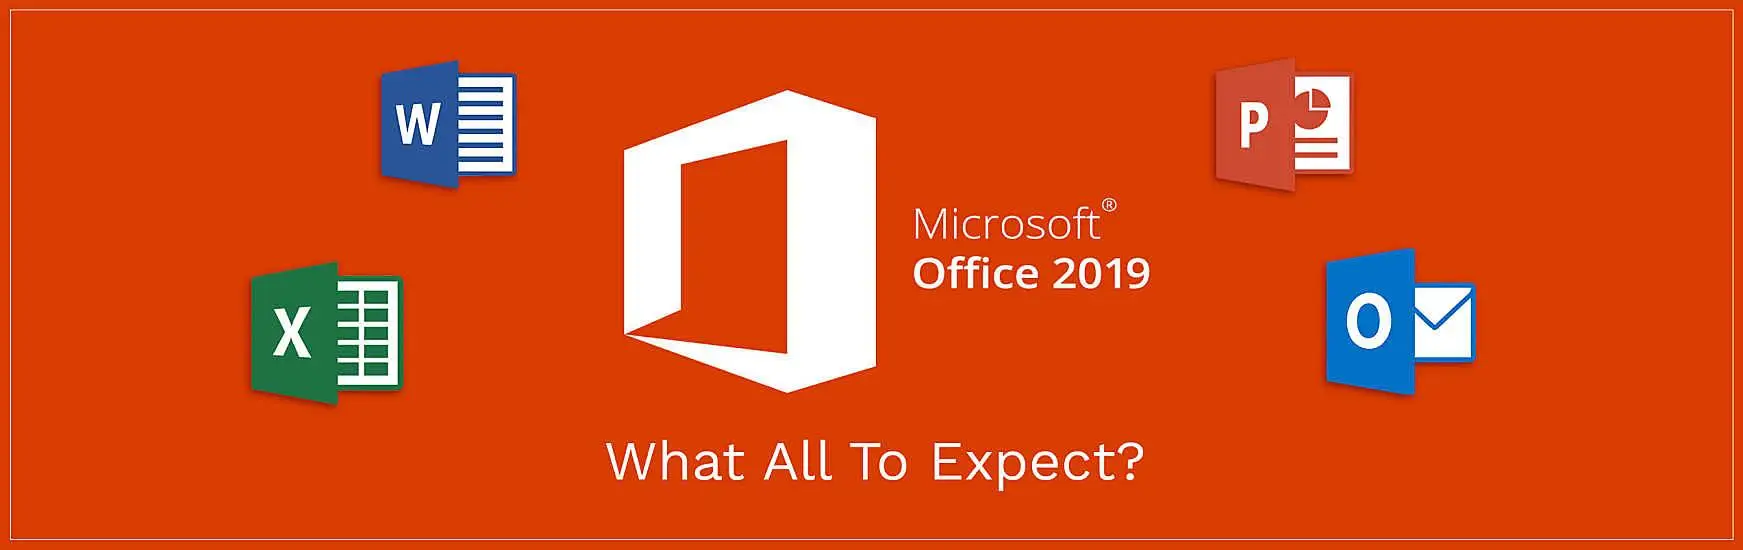 [Windows] Office 2019 專業版安裝包 + 破解工具 + 一鍵激活 